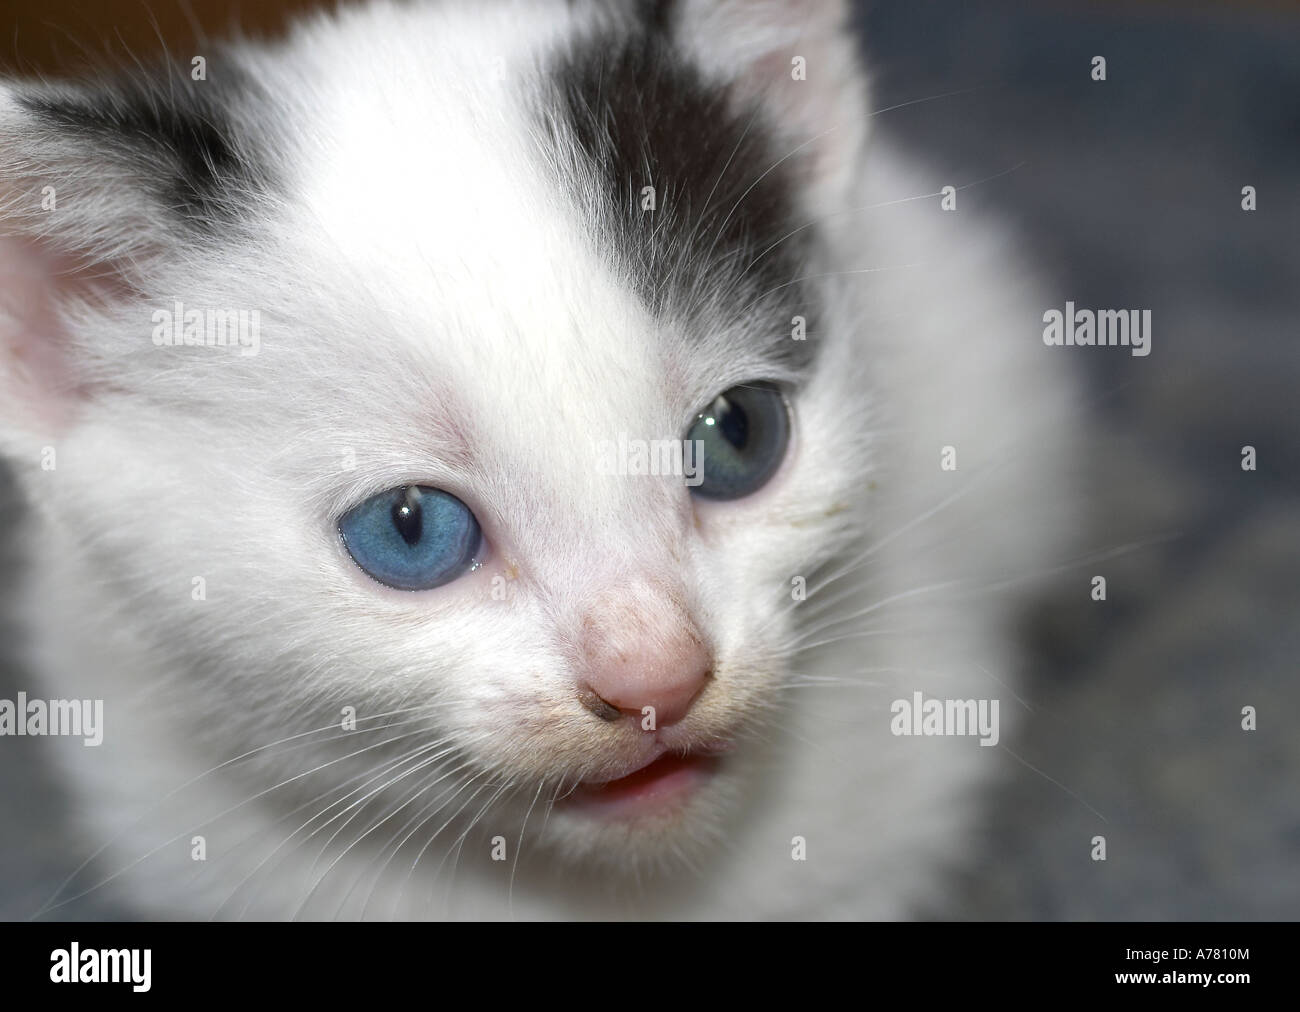 Du chaton aux yeux bleus visage couvert de chats après avoir mangé Banque D'Images